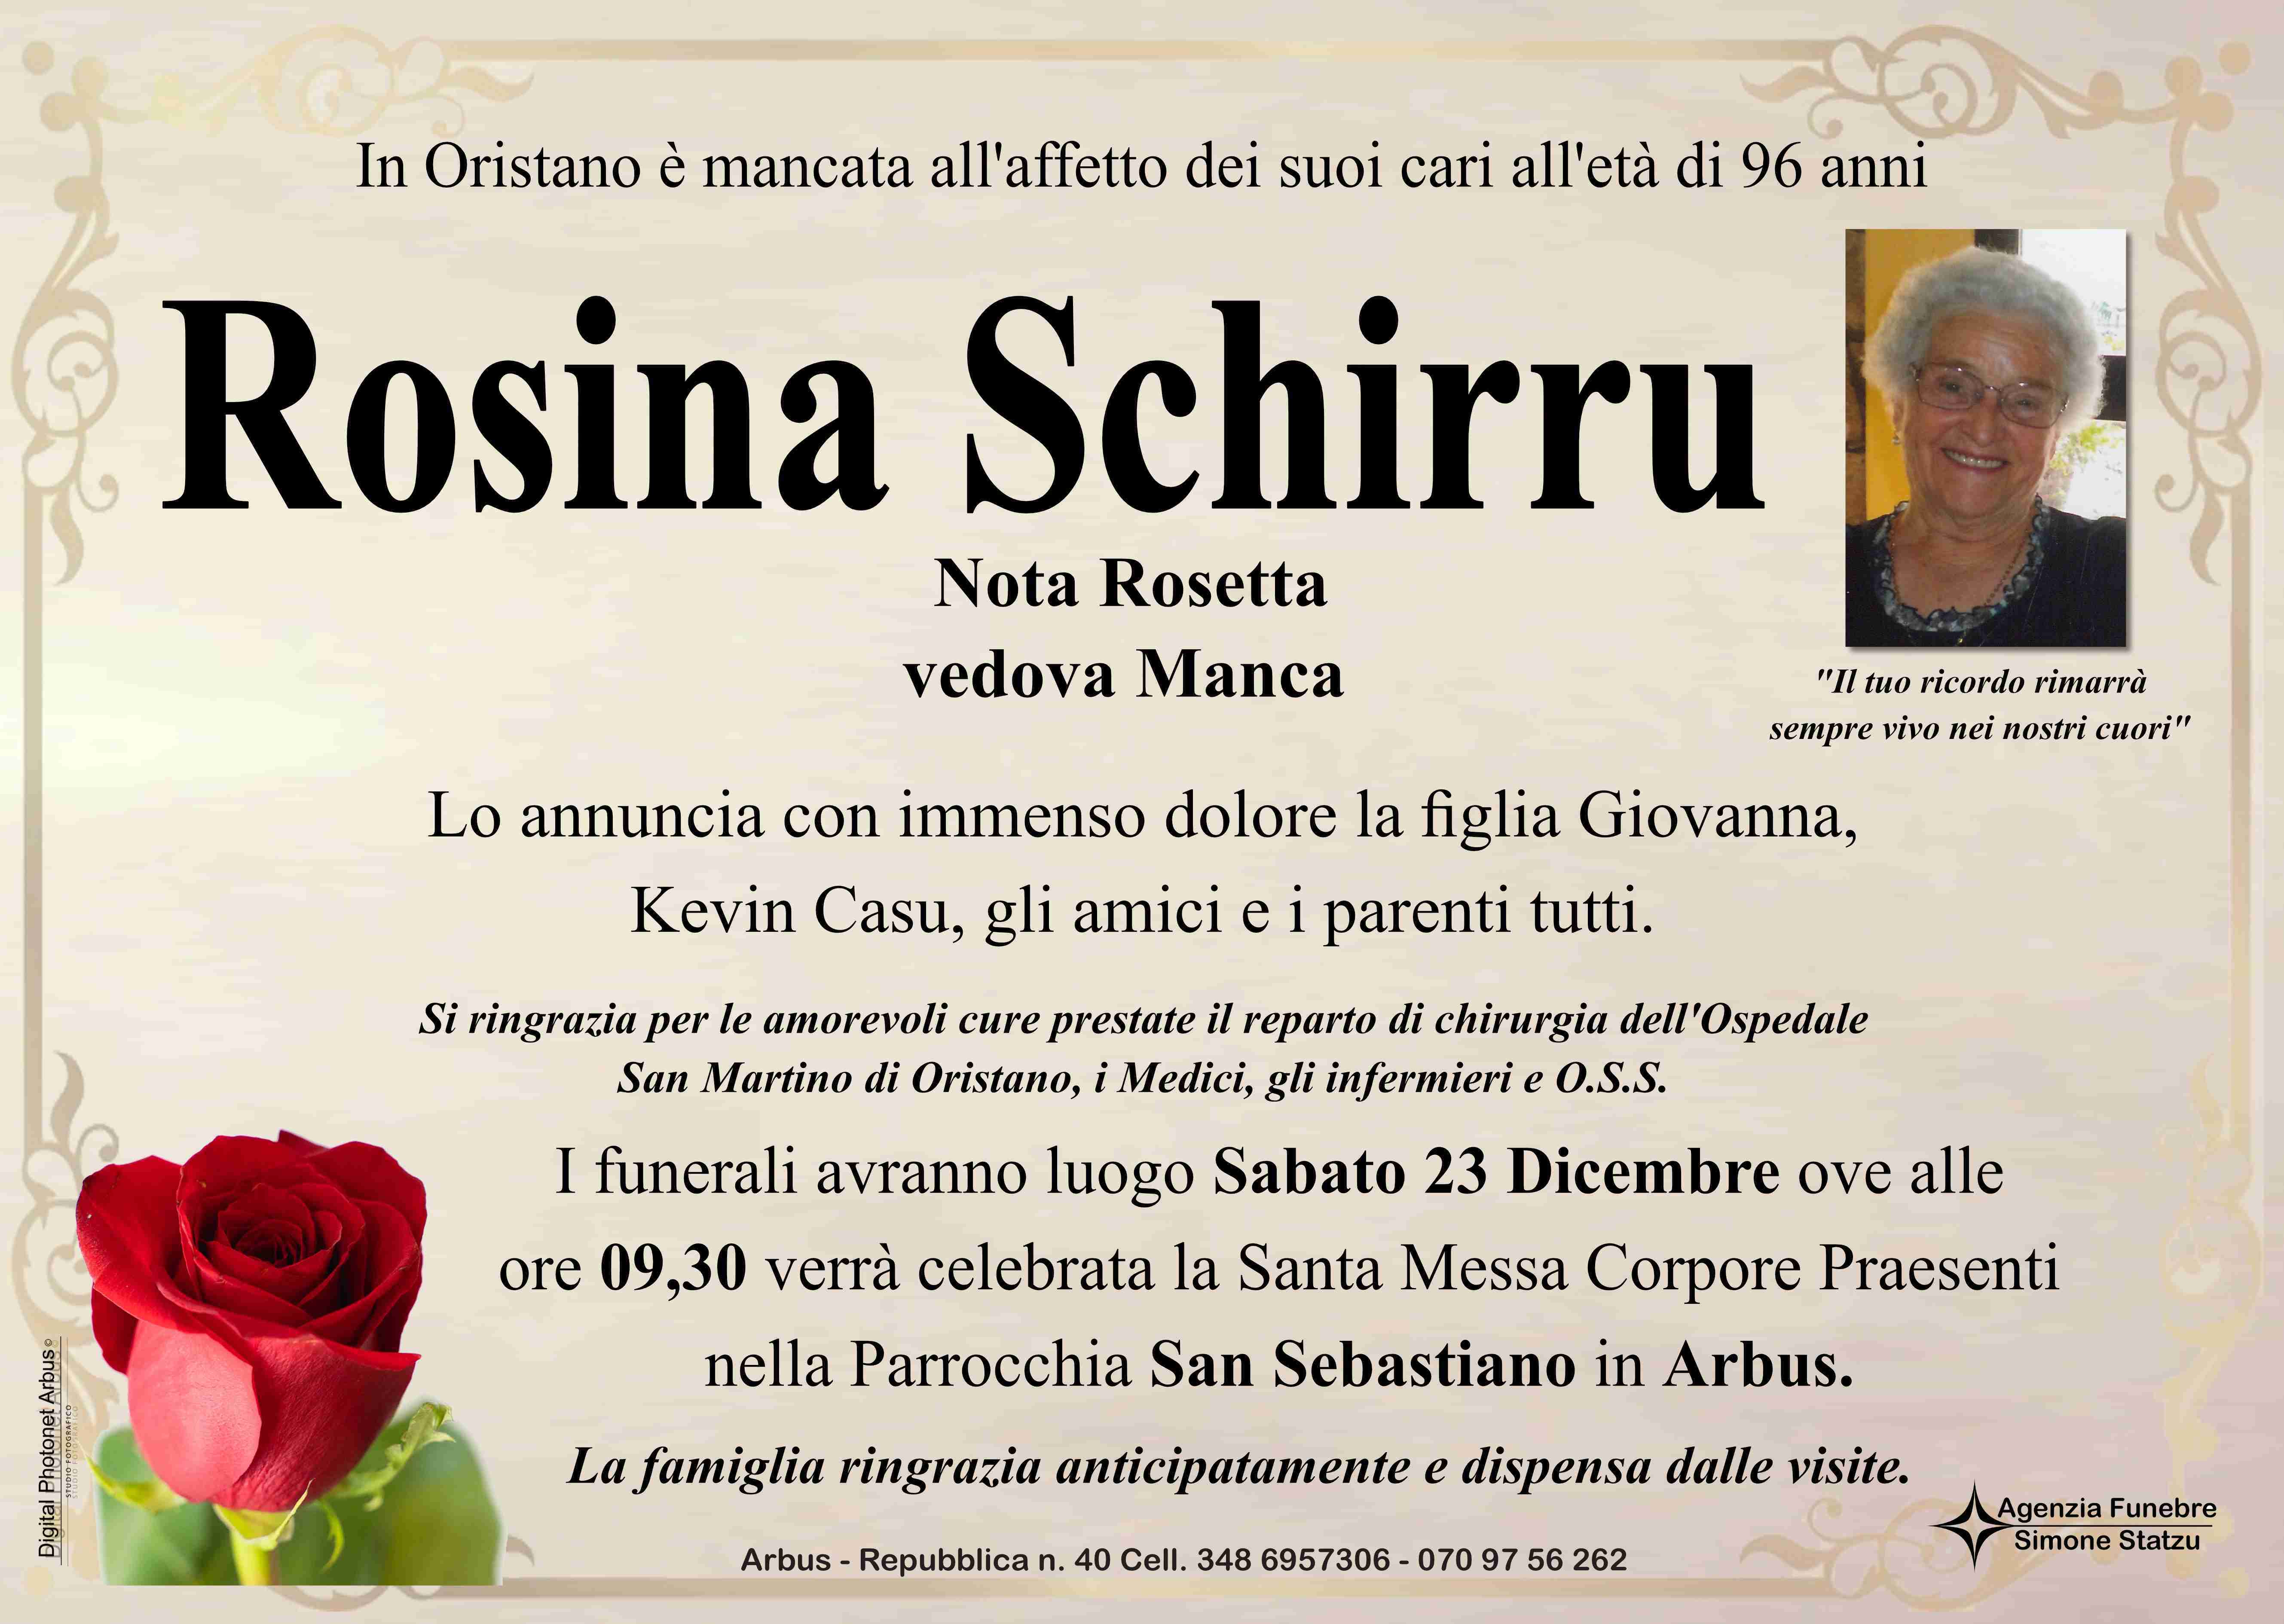 Rosina Schirru